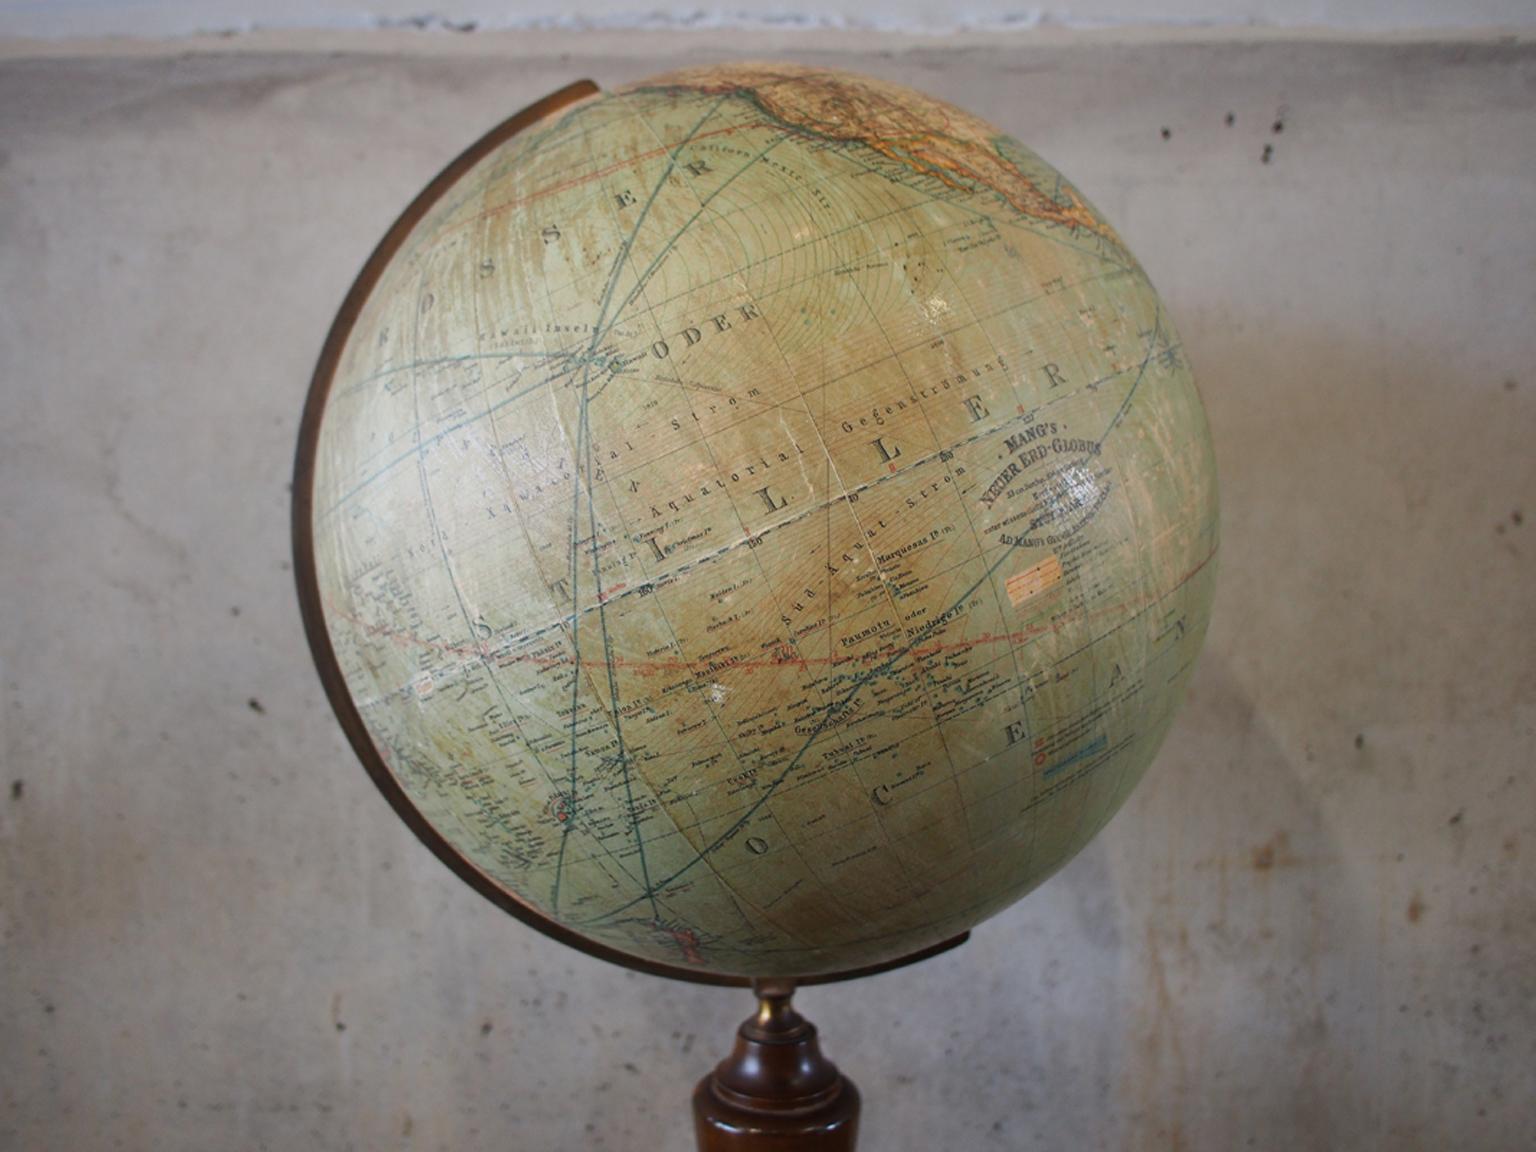 Un beau et vieux globe terrestre avec une boussole. Une pièce particulièrement belle avec un pied droit et une base en bois avec une boussole intégrée.

